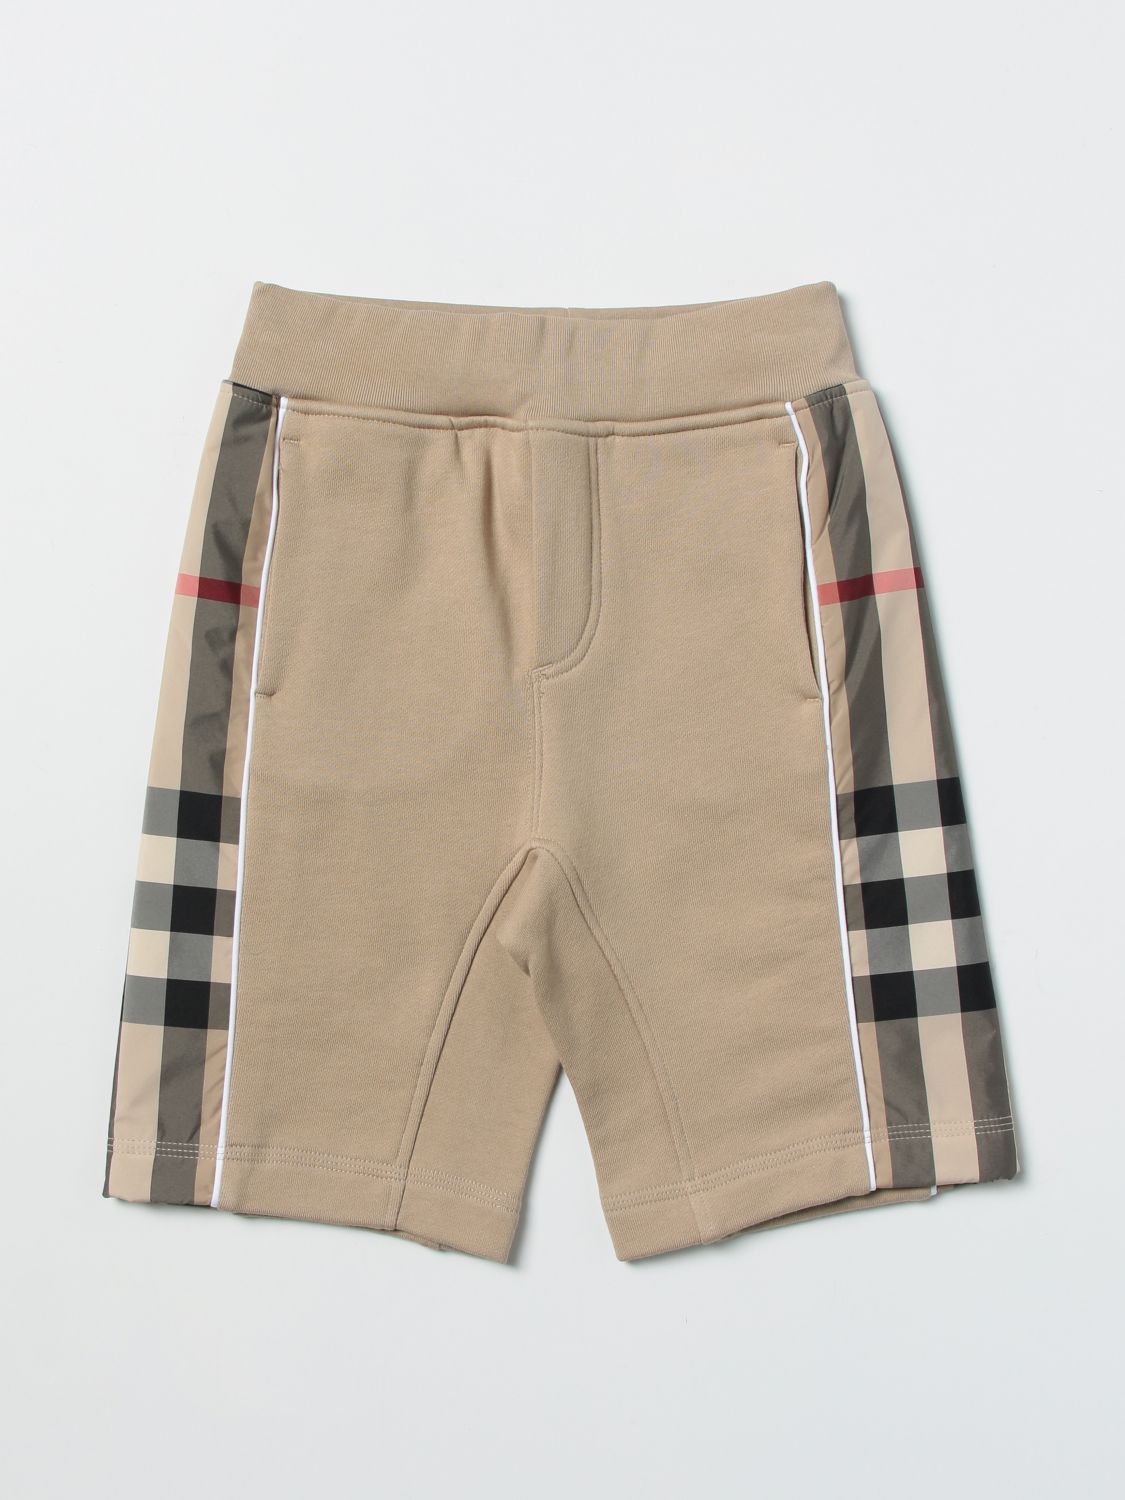 Pantaloncino in cotone con inserti tartan Giglio.com Abbigliamento Pantaloni e jeans Shorts Pantaloncini 